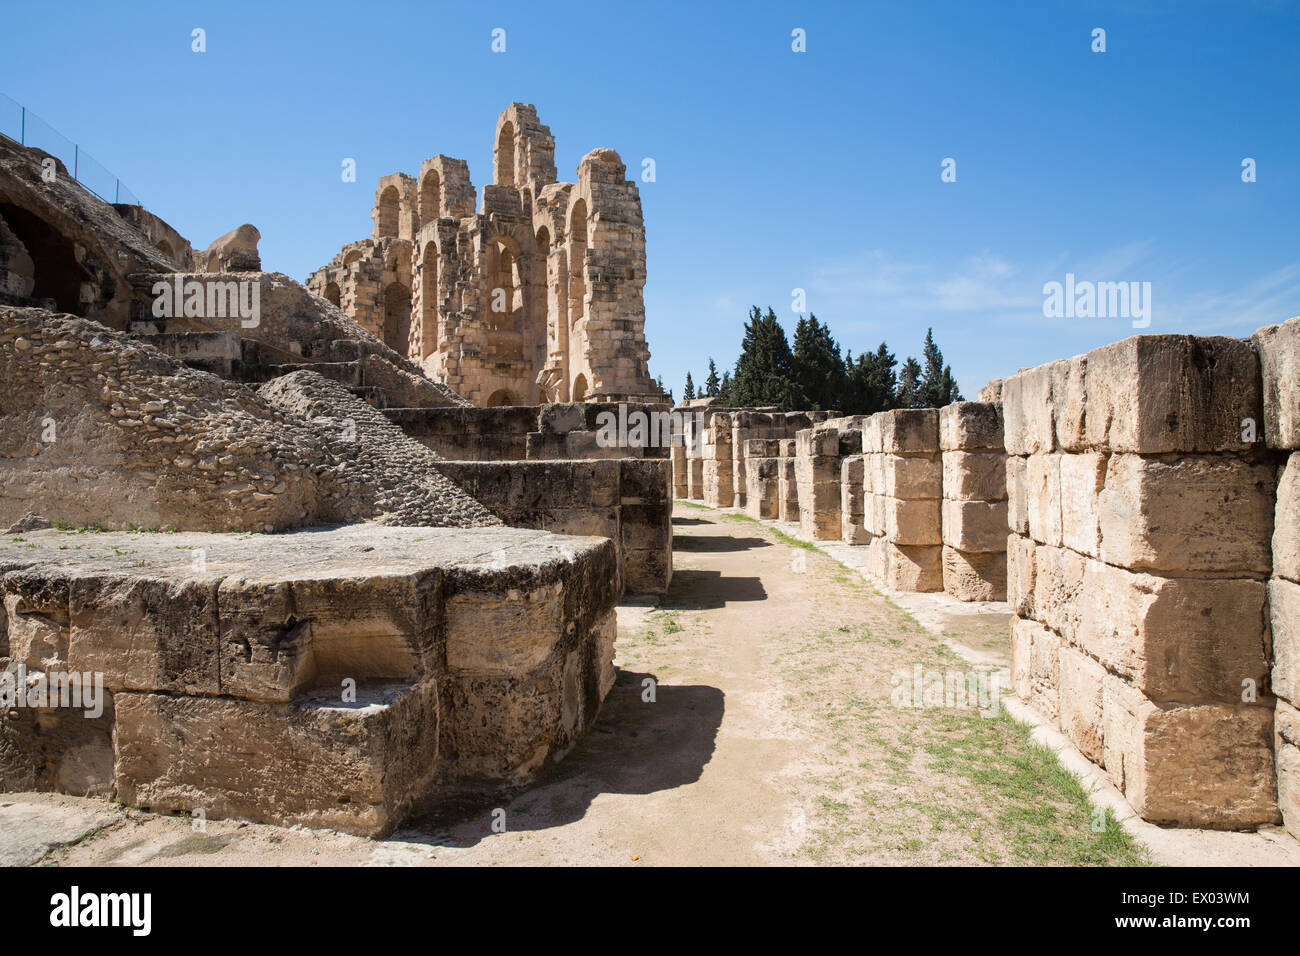 Détail de ruines de l'amphithéâtre, El Jem, Tunisie Banque D'Images